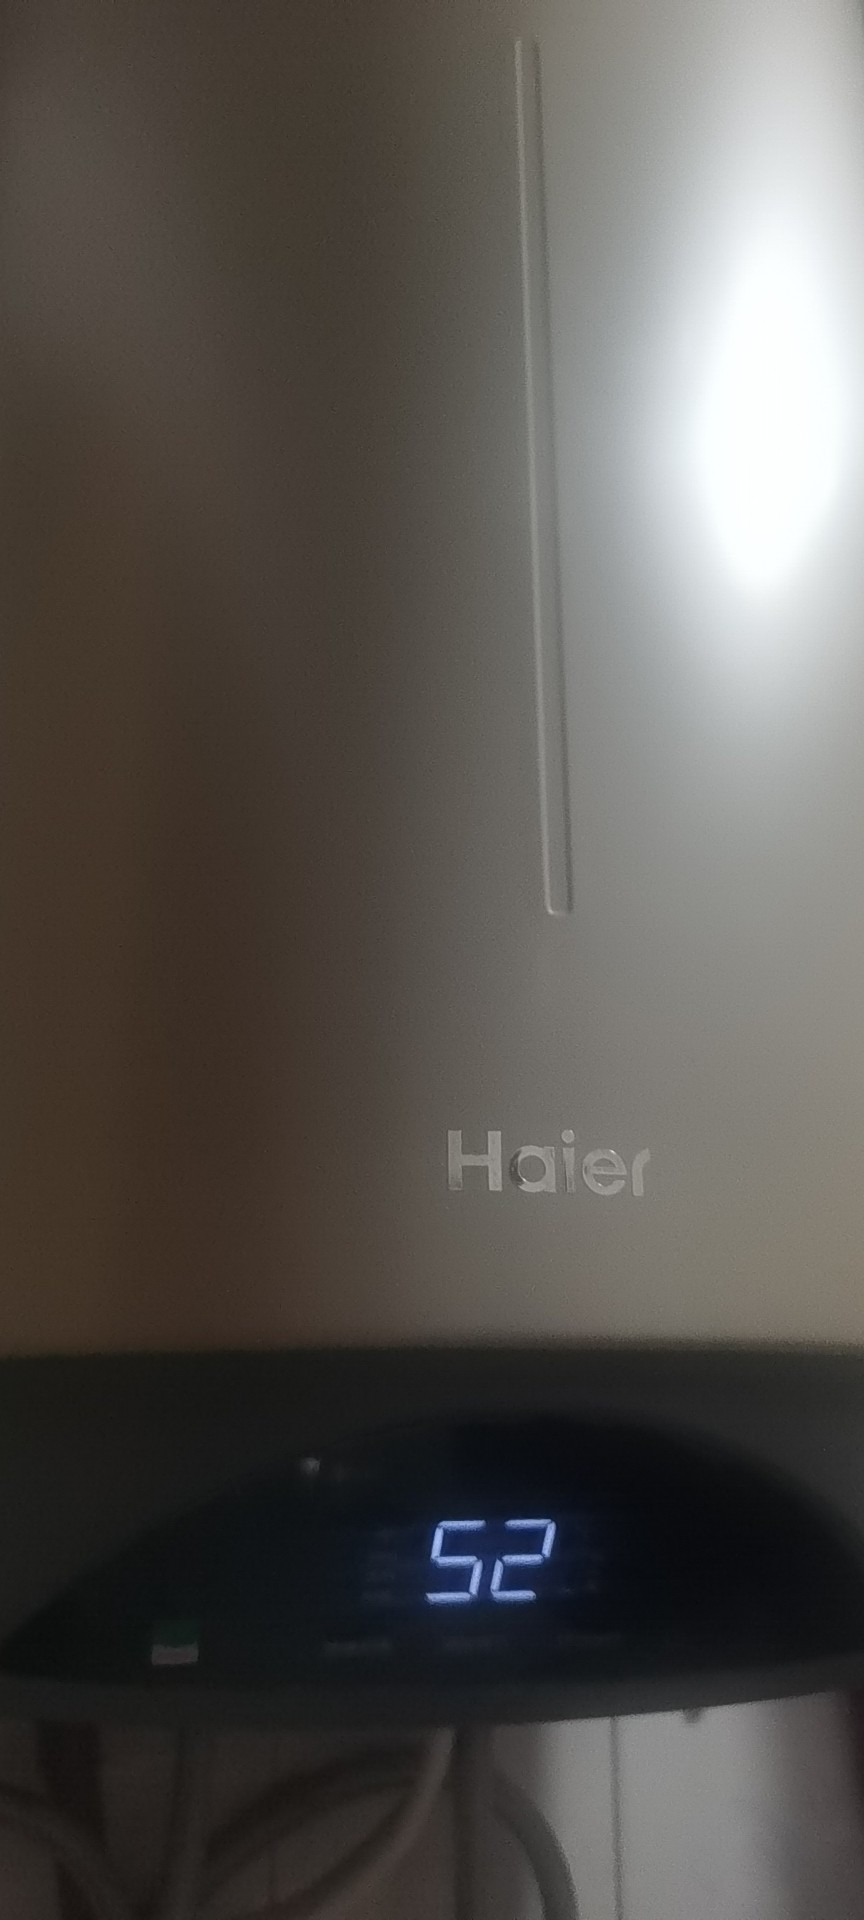 海尔(Haier)电热水器60升竖式ES60V-V3U1 3000W变频速热 预约洗浴 一级能效 WIFI控制晒单图